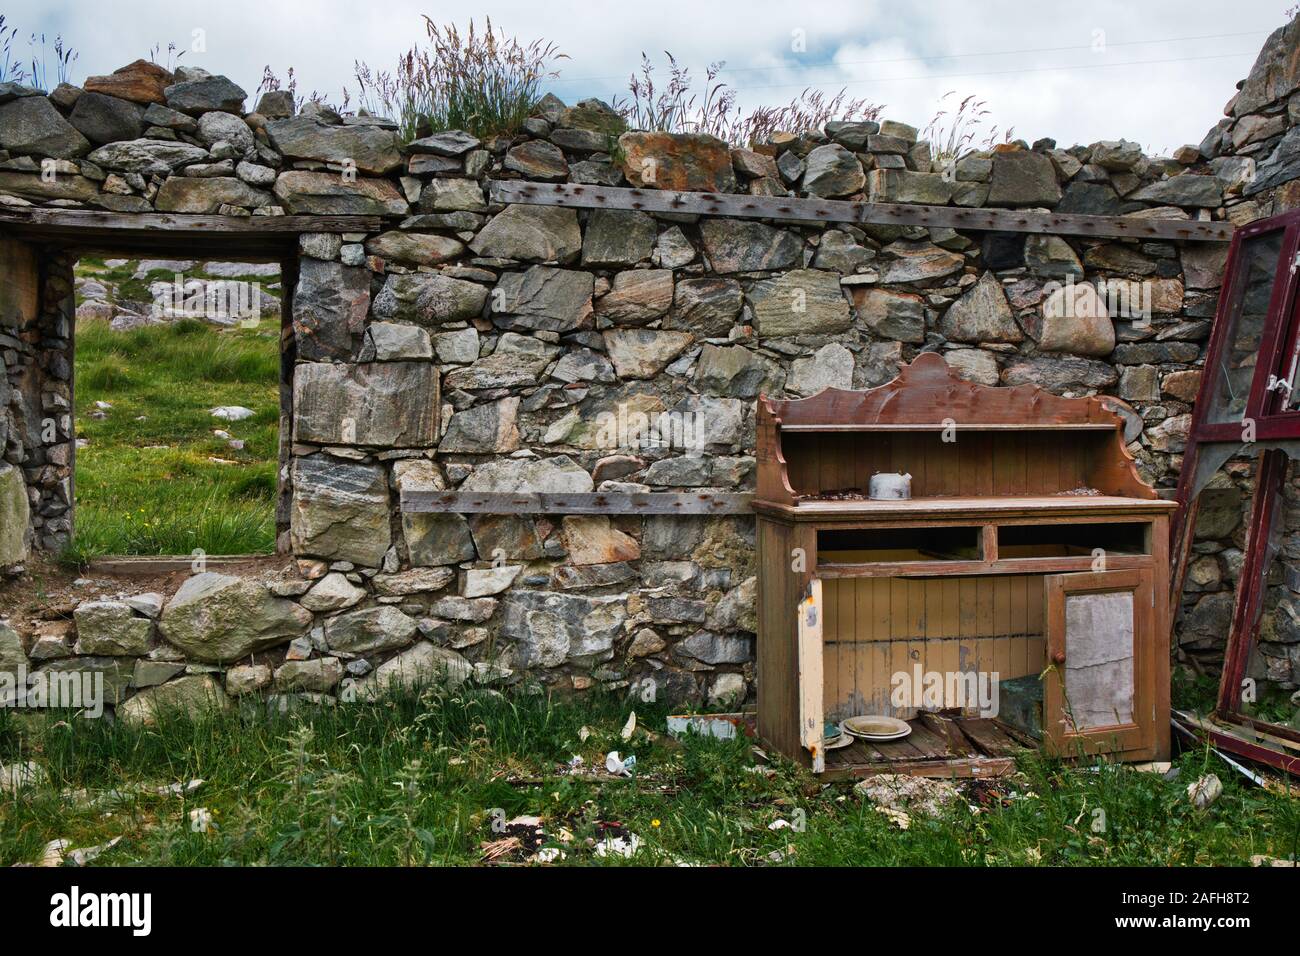 Commode dans les terres de crofters abandonnées, île de Lewis et Harris, Outer Hebrides, Écosse Banque D'Images